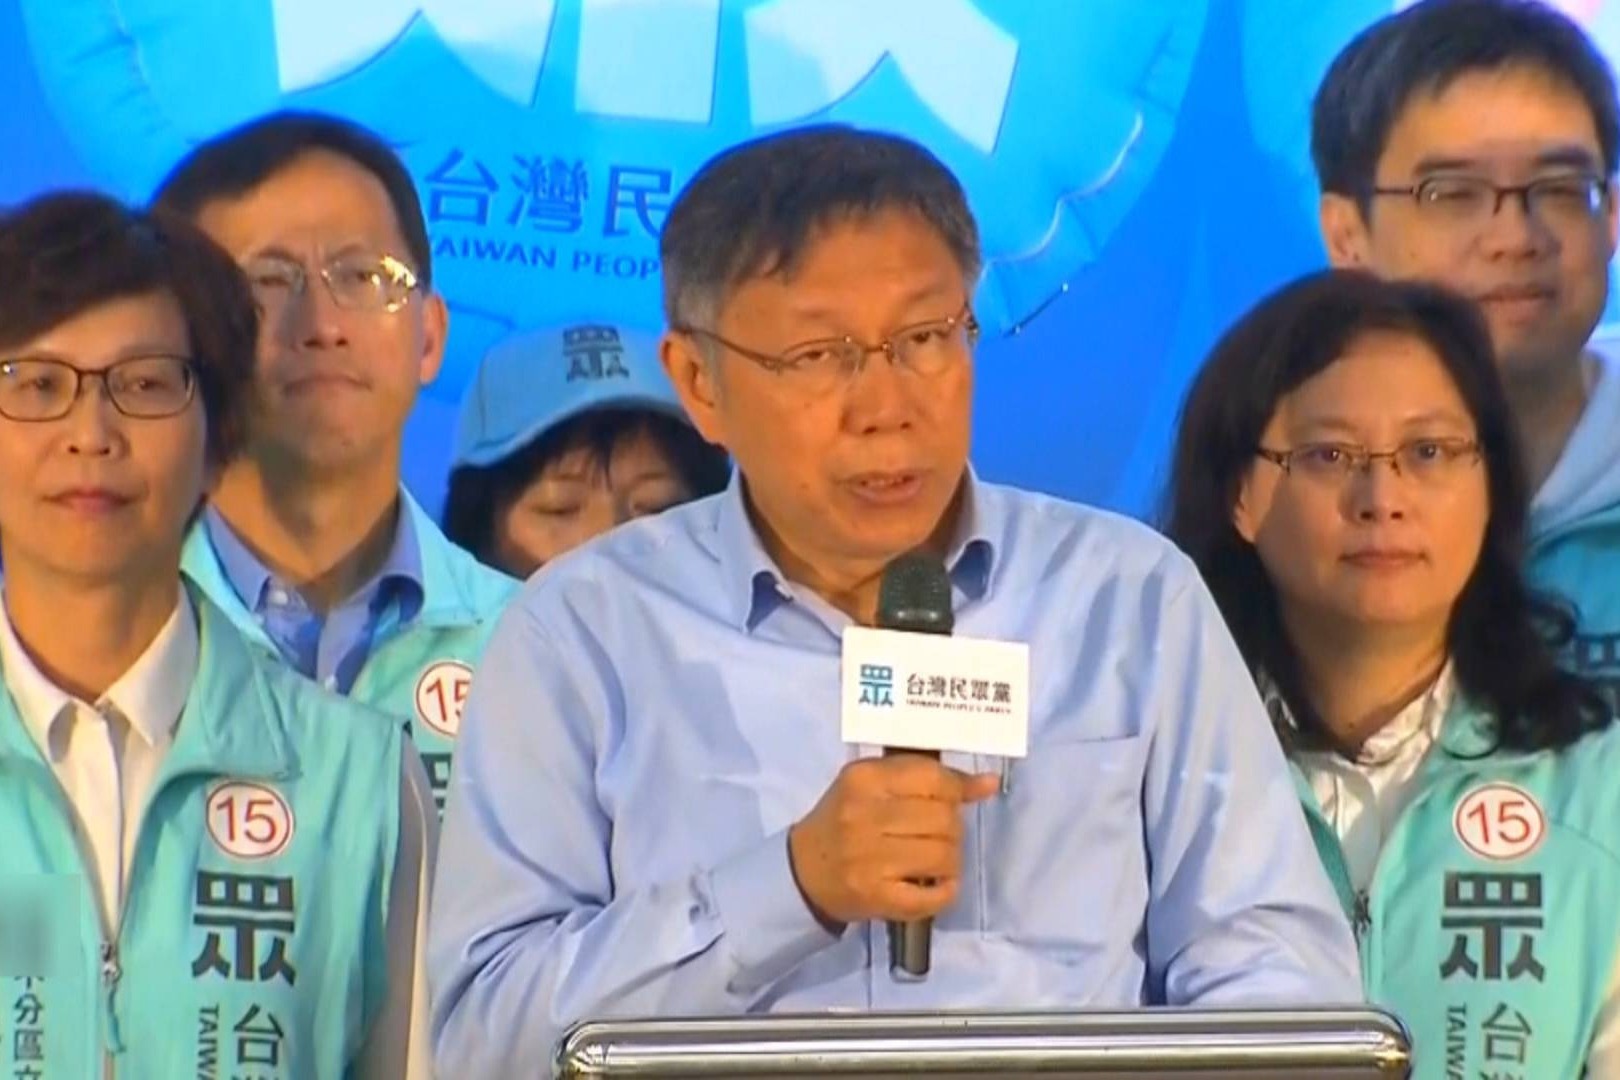 台湾民众党正式成立 柯文哲任首届党主席 — RFA 自由亚洲电台粤语部